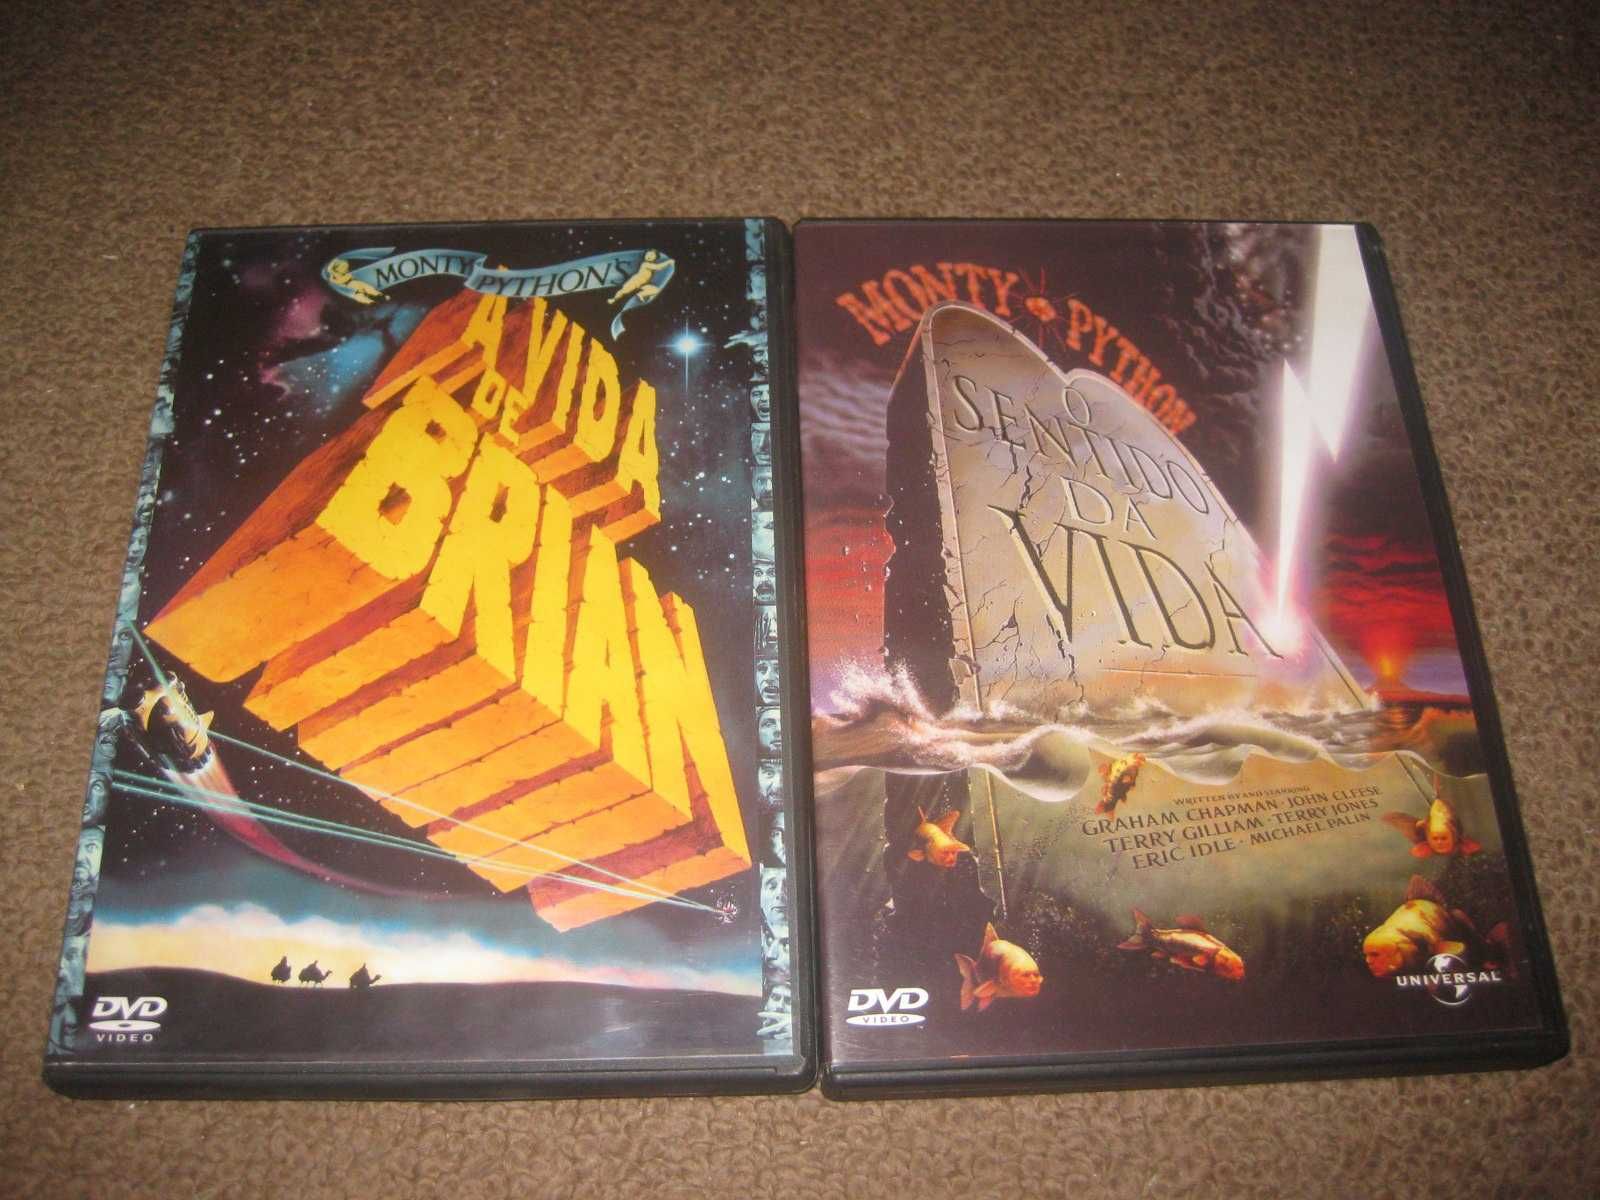 2 Filmes em DVD dos "Monty Python"